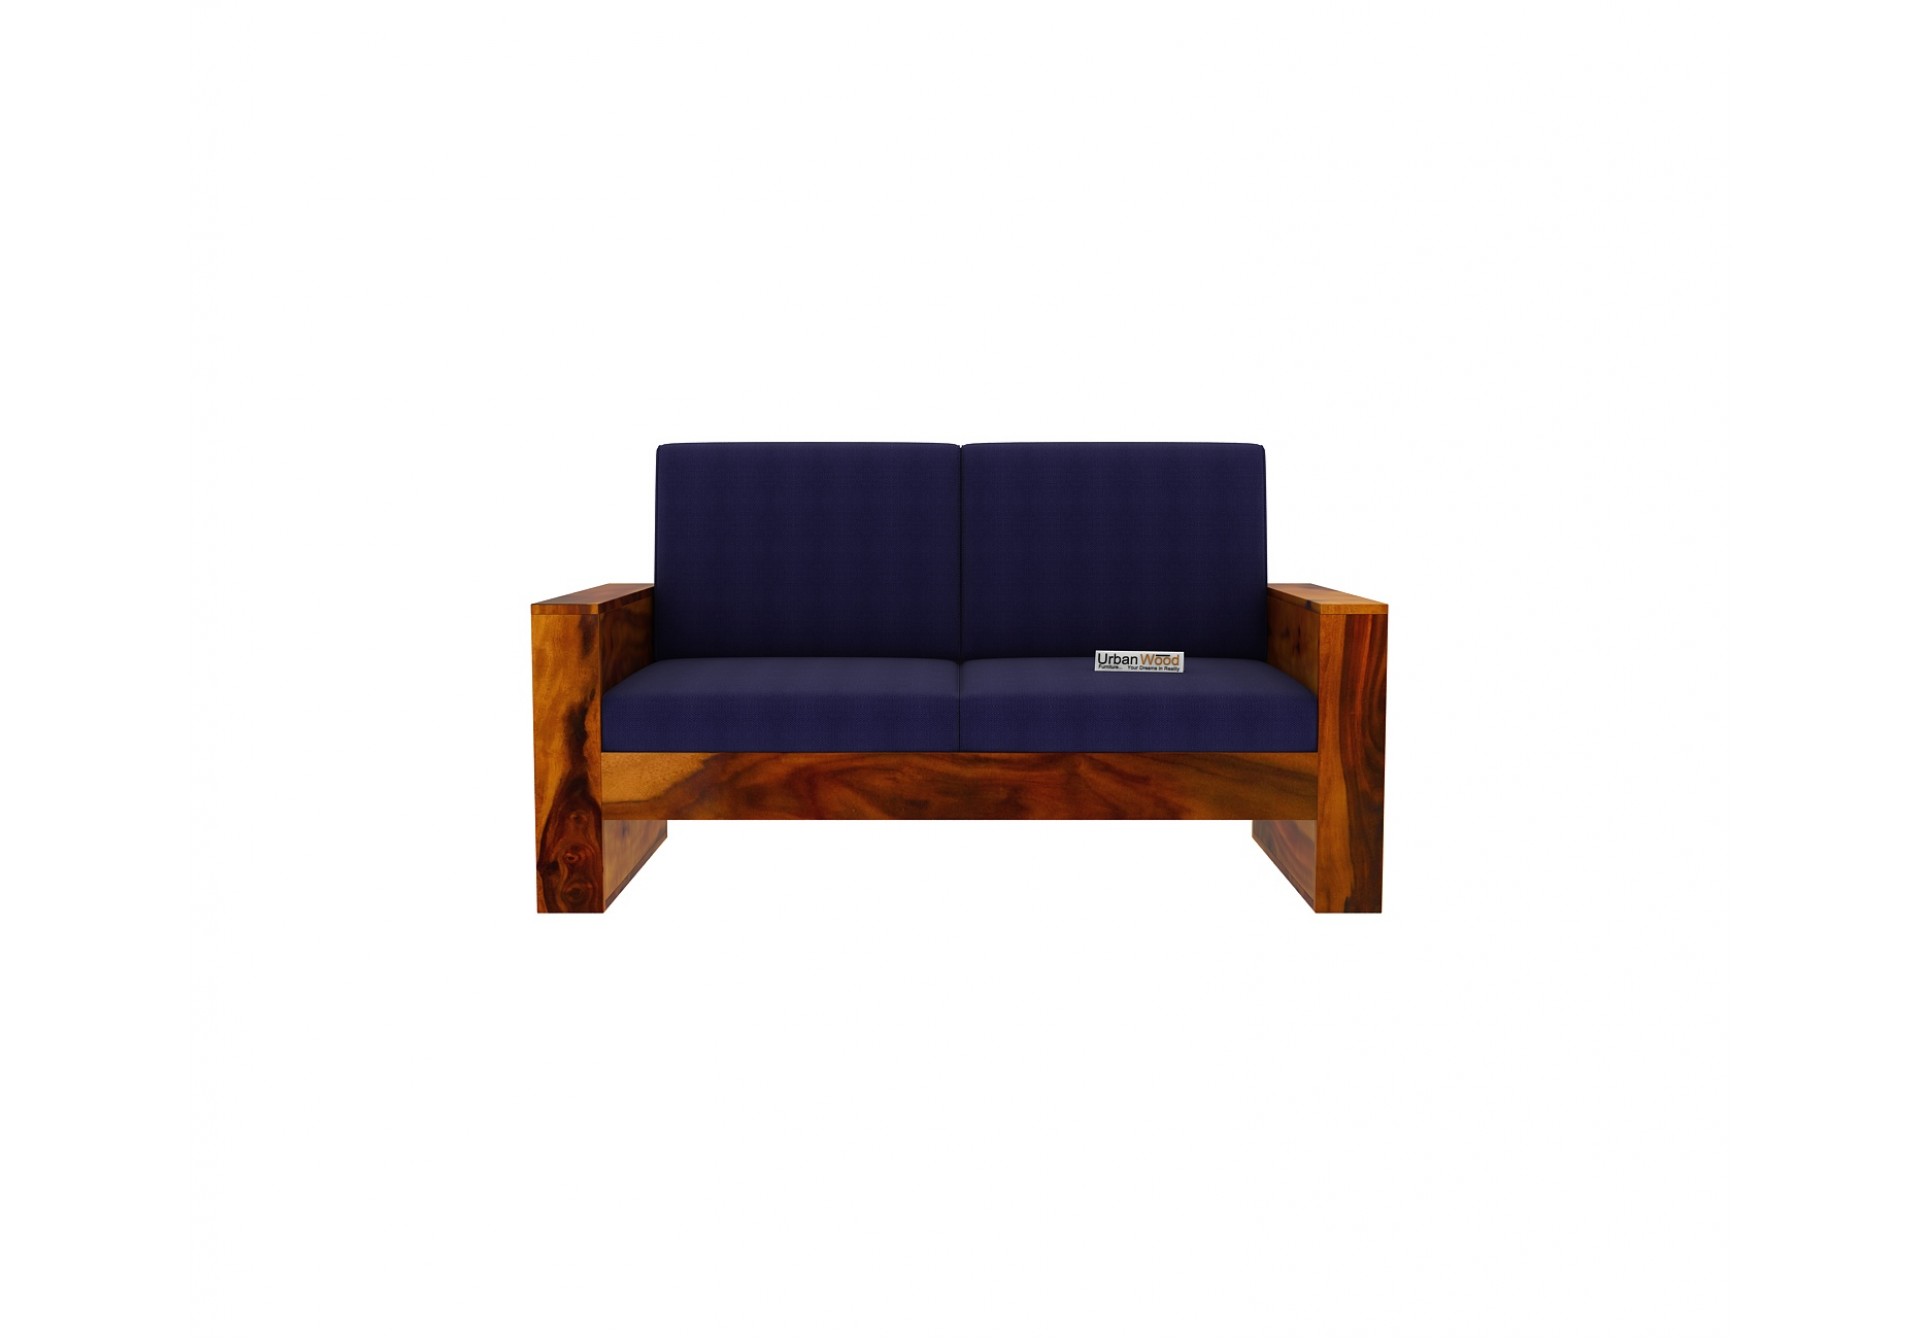 Modway Wooden Sofa Set 3+2+1 Seater (Honey Finish)